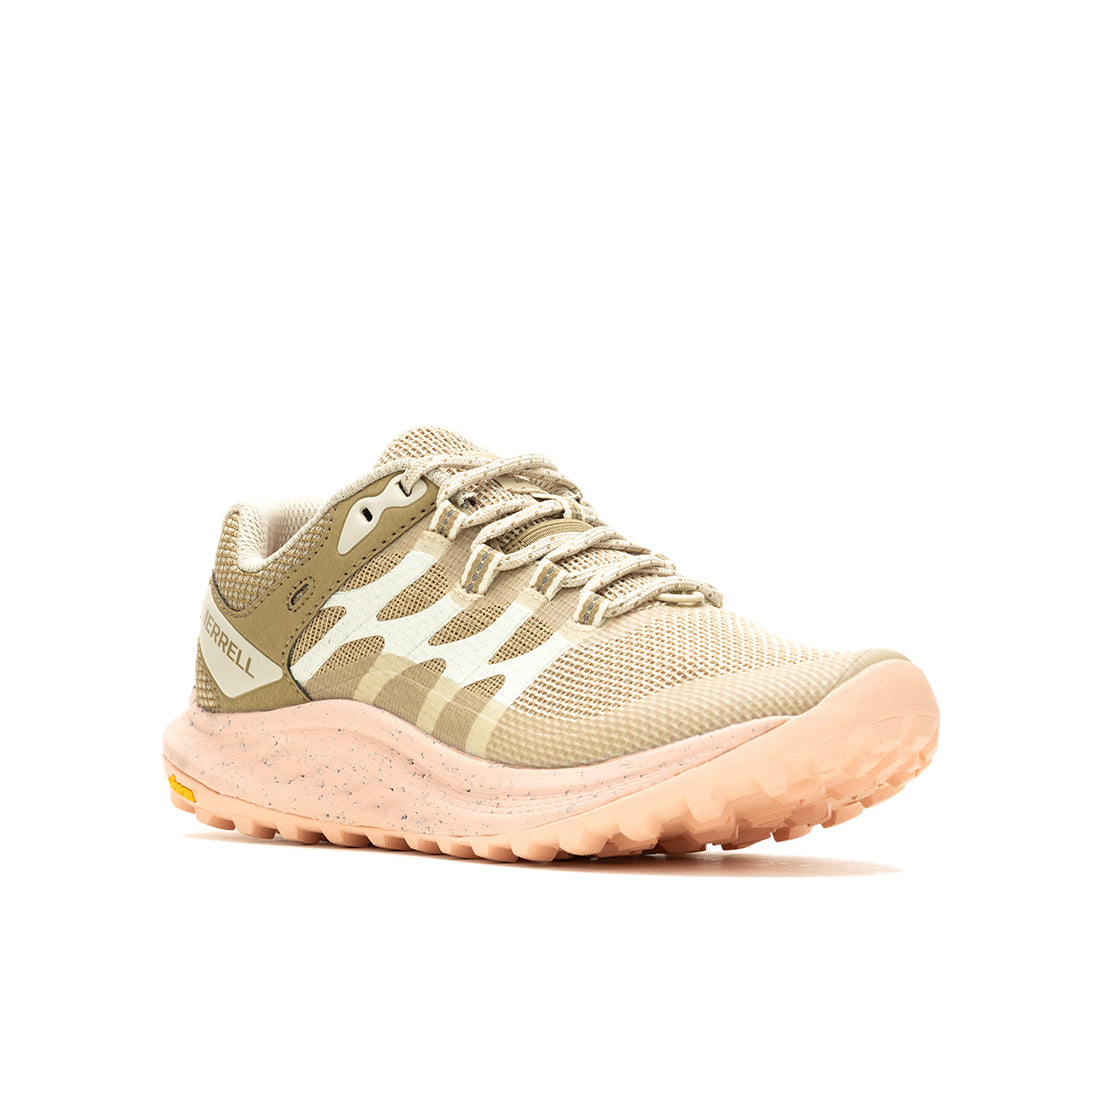 Antora 3 – Cream/Peach Womens Trail Running Shoes - 0